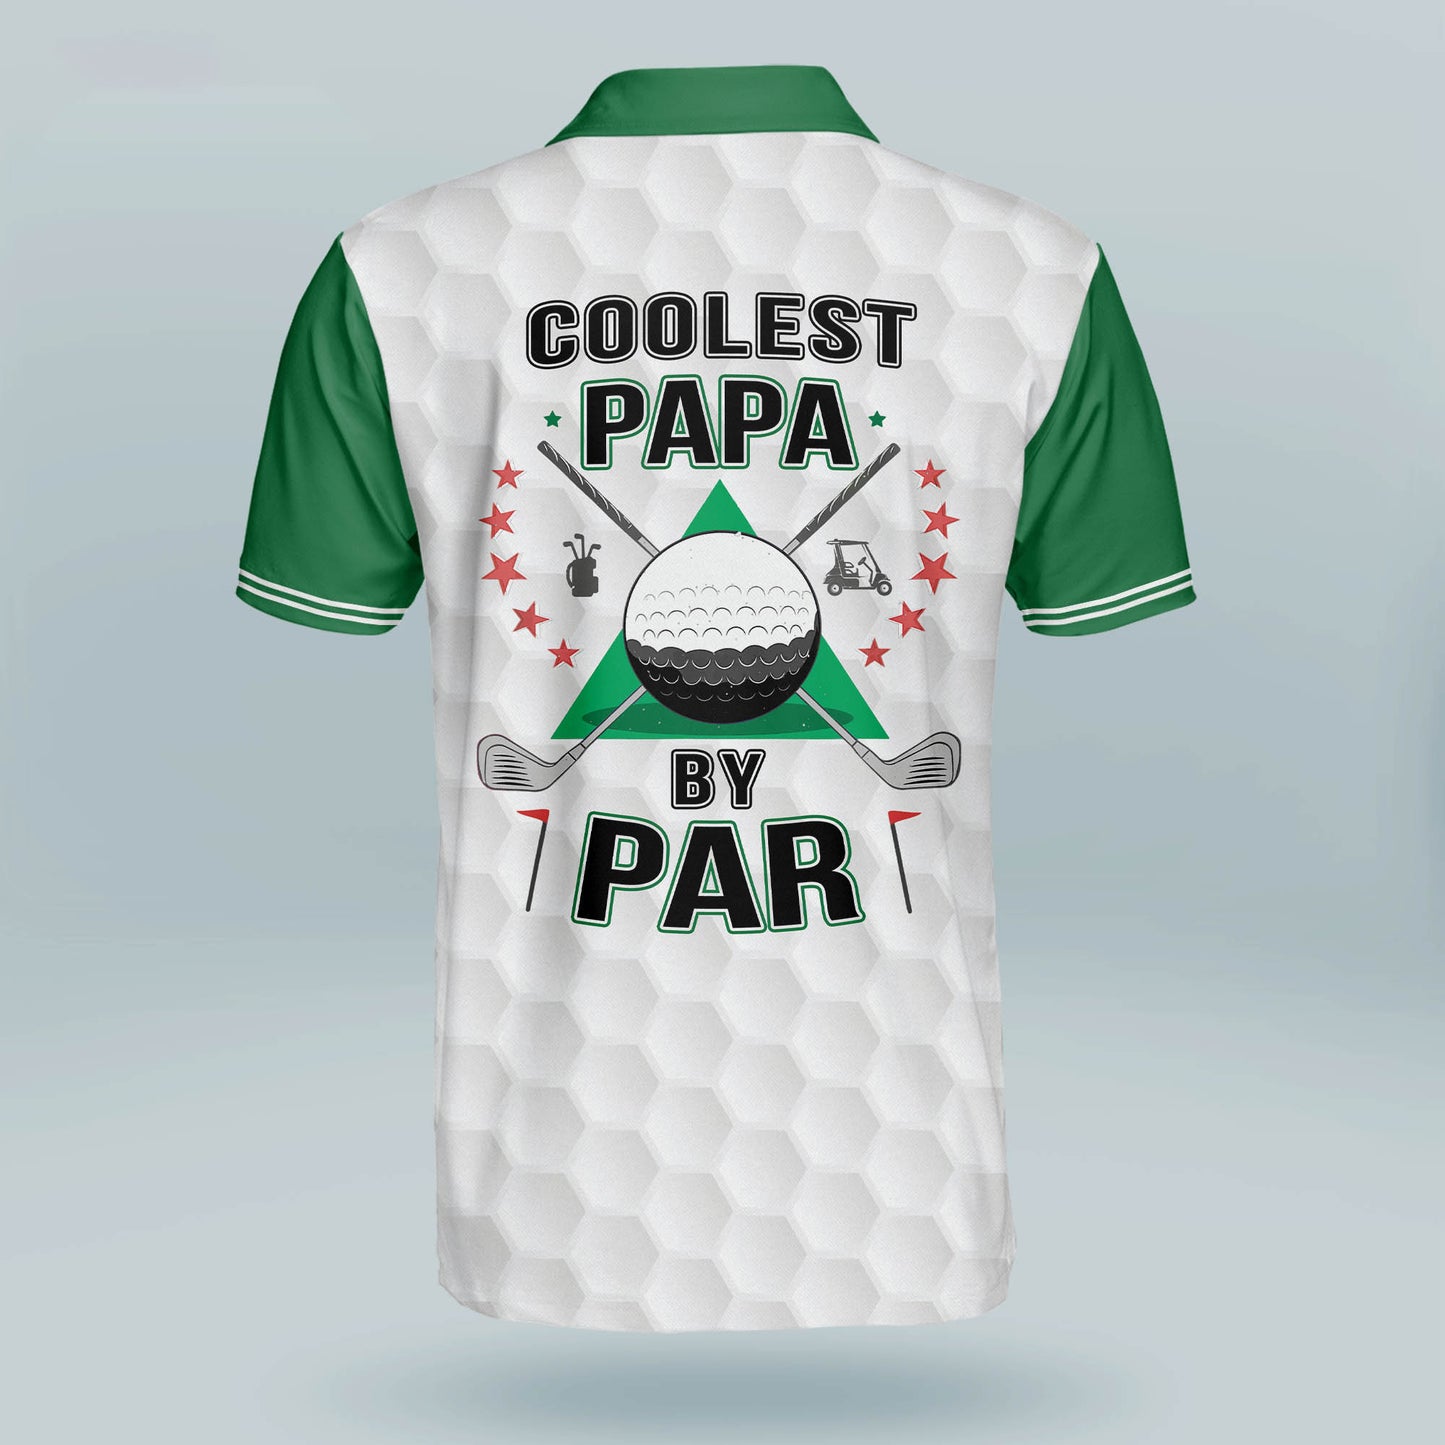 Coolest Papa by Par Golf Polo Shirt GM0283